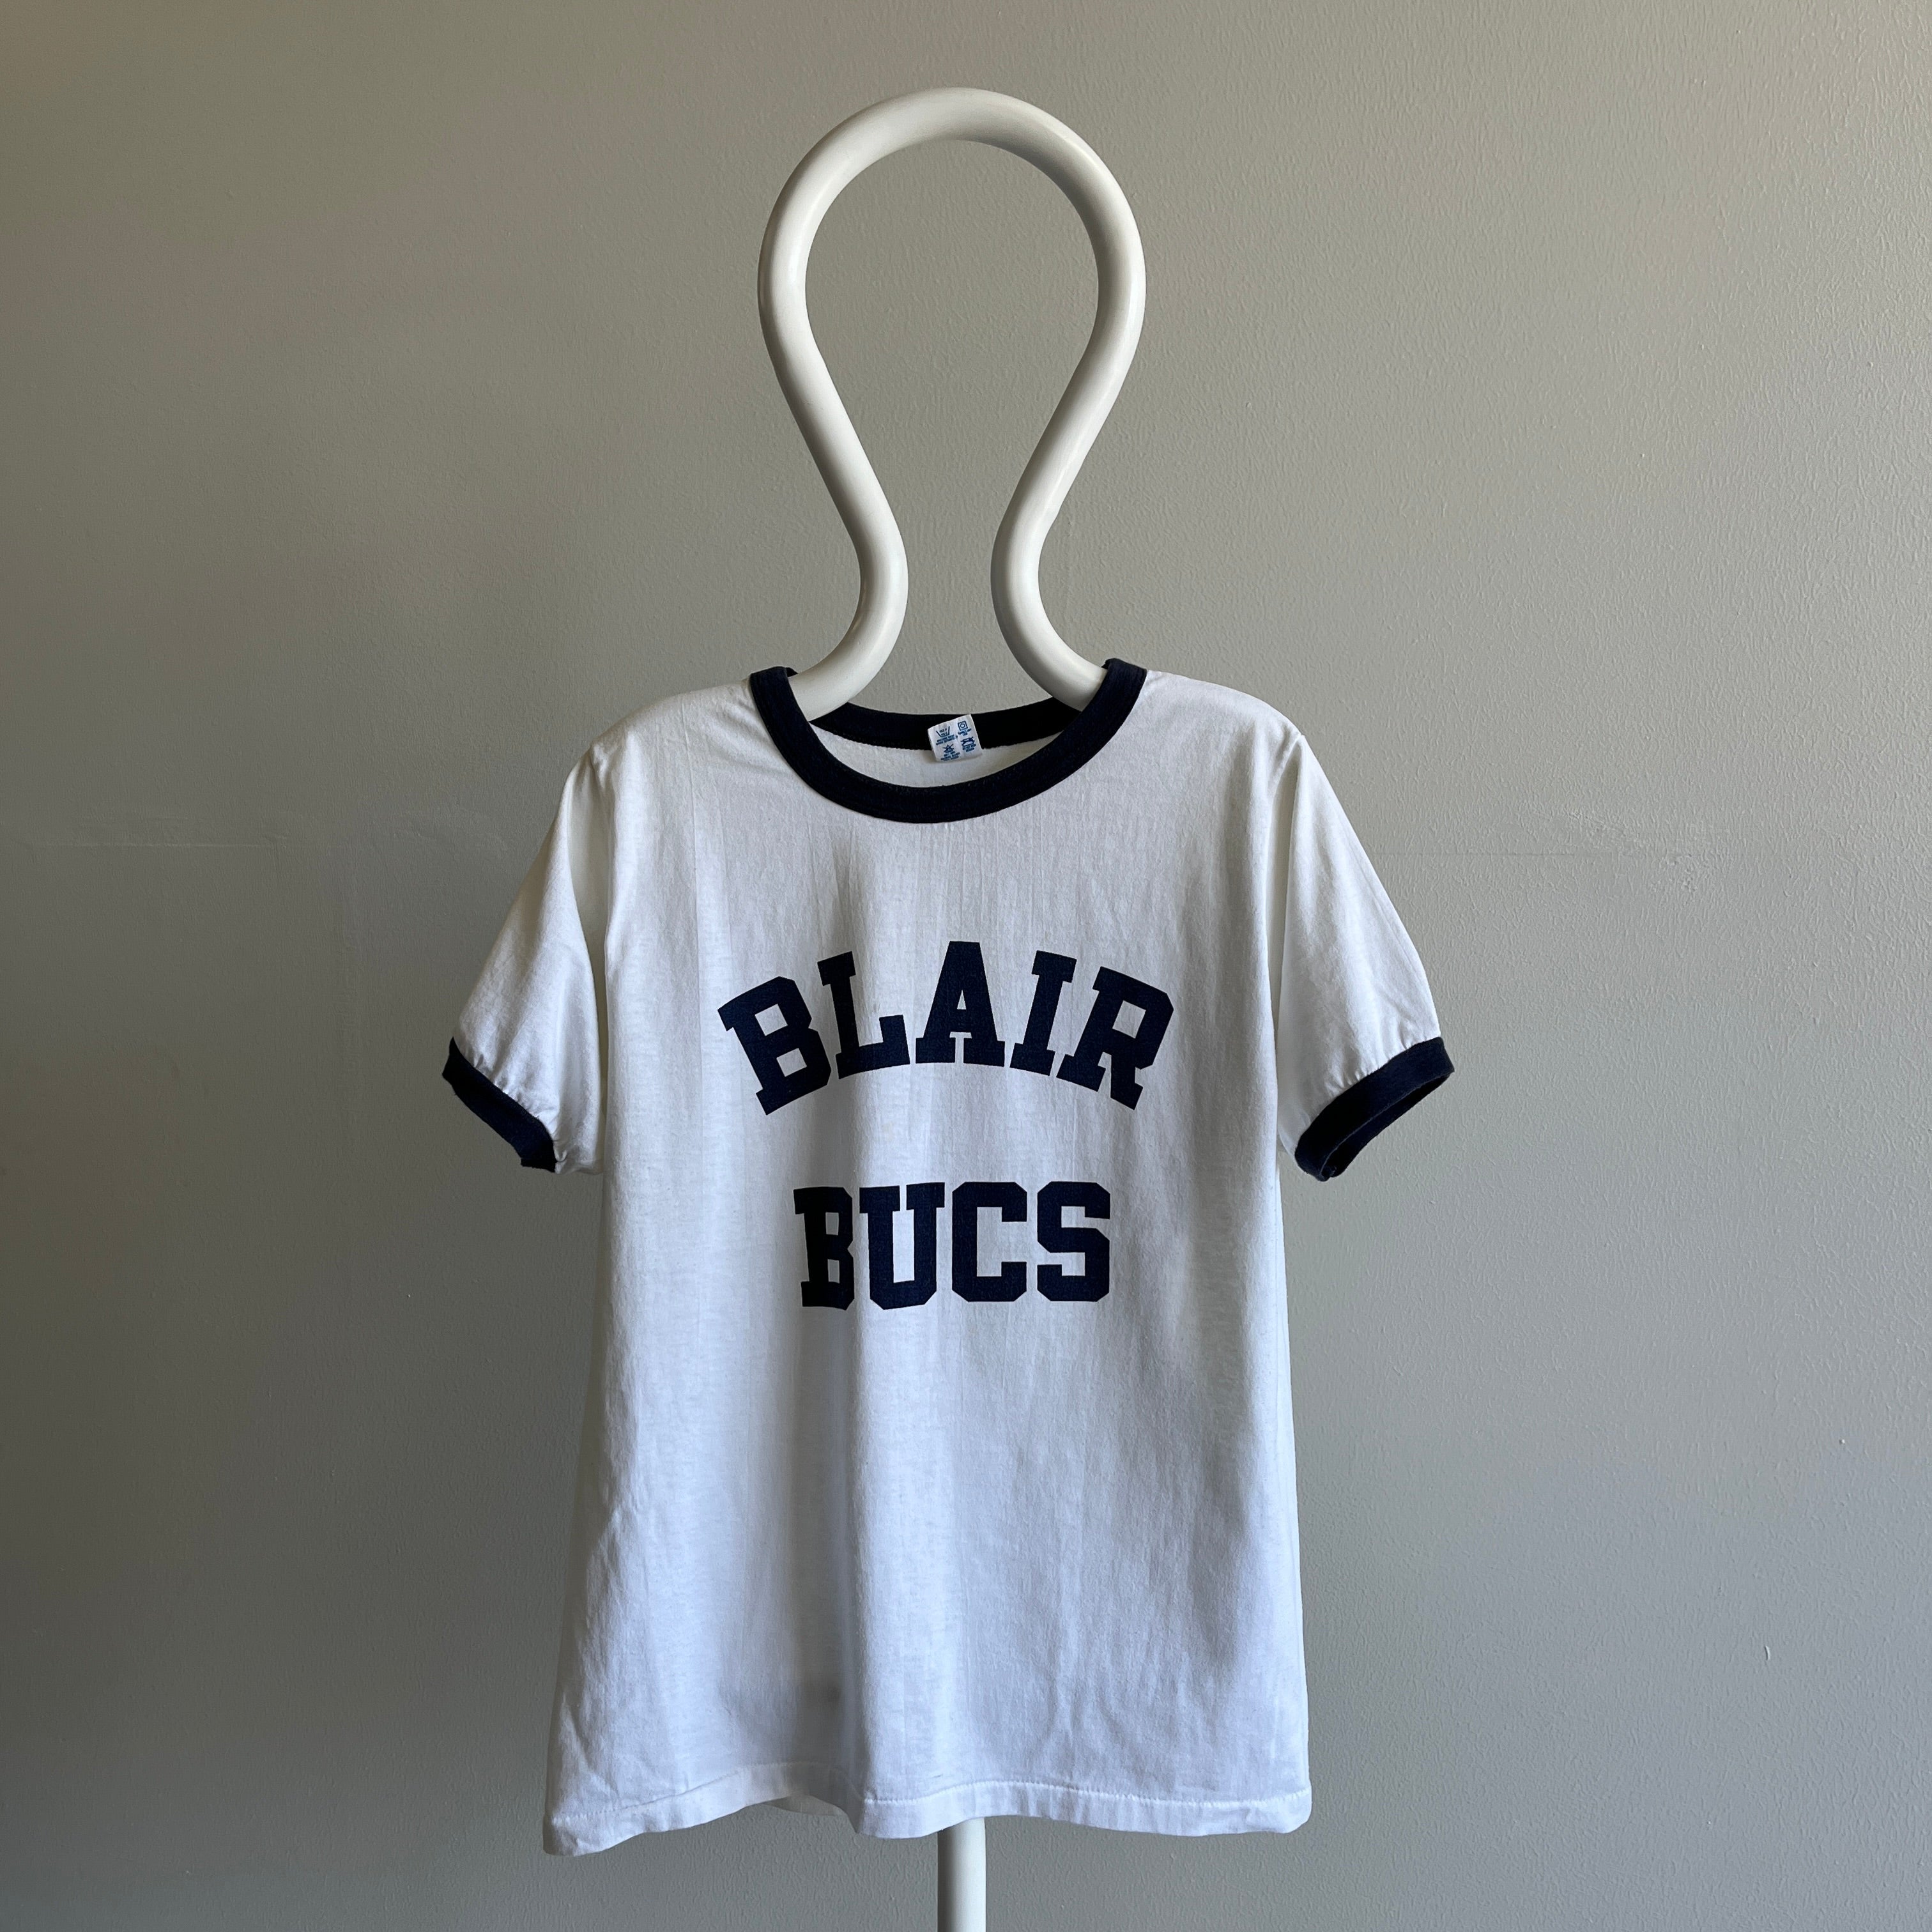 T-shirt Blair Bucs de la marque Champion des années 1980 avec Sharpie sur le dos